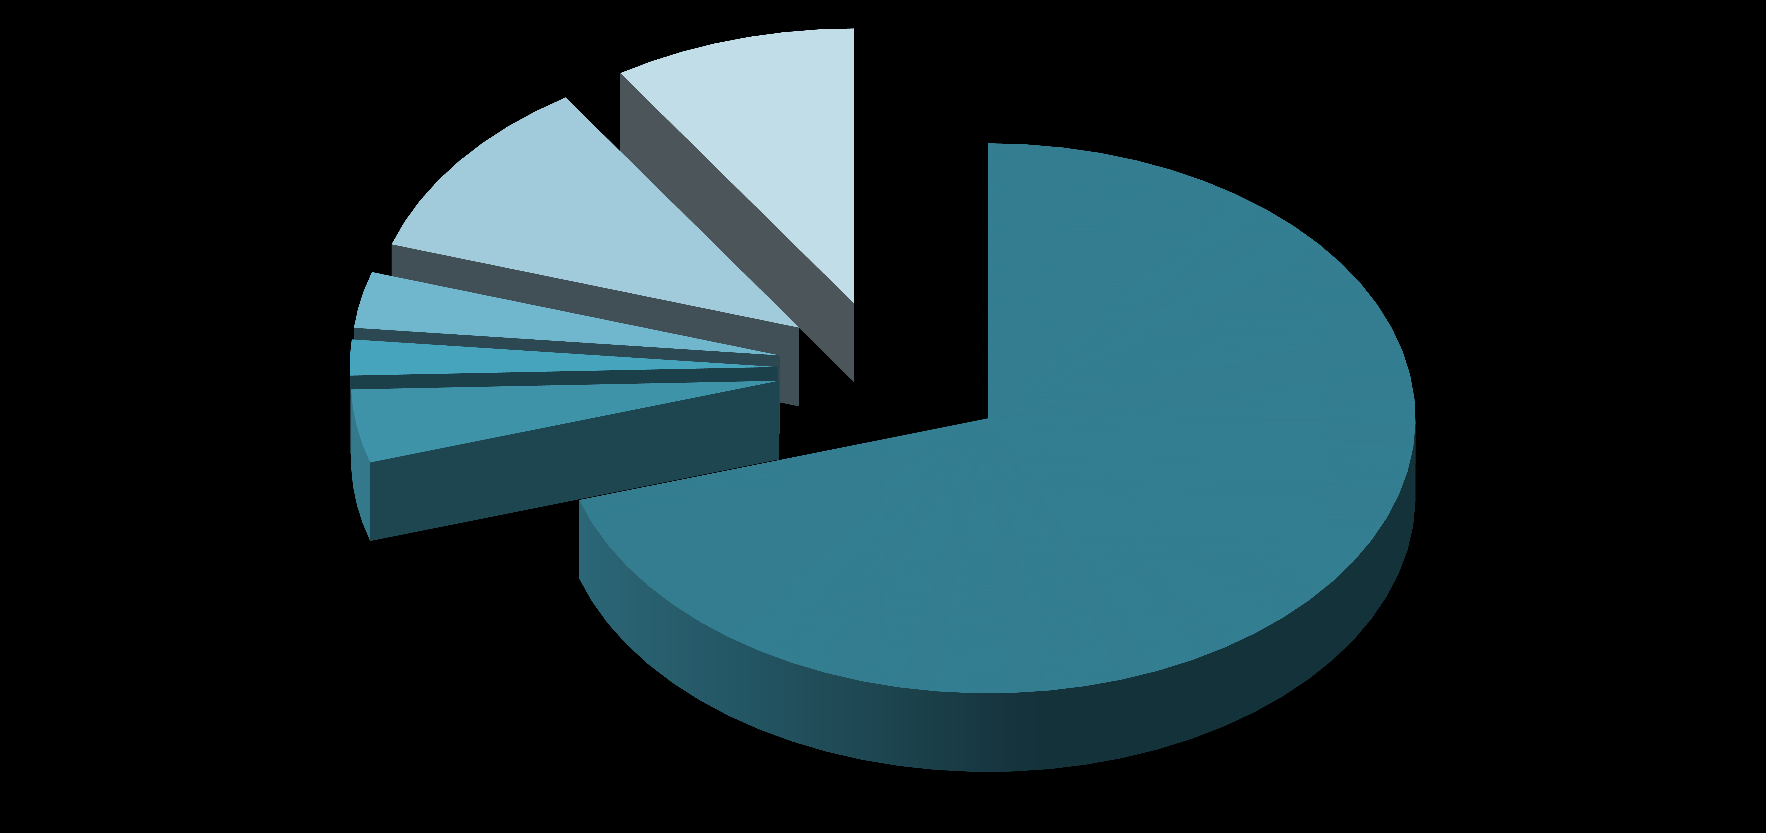 Innskudd, utlån og balanse Utlånsfordeling Annet 9,2 % Tjenesteyting 3,3 % Eiendomsdrift 10,9 % Supply/Offshore 2,1 % Fiskeri 4,3 % Personmarked 70,2 % Annet (9,2 %) inneholder: